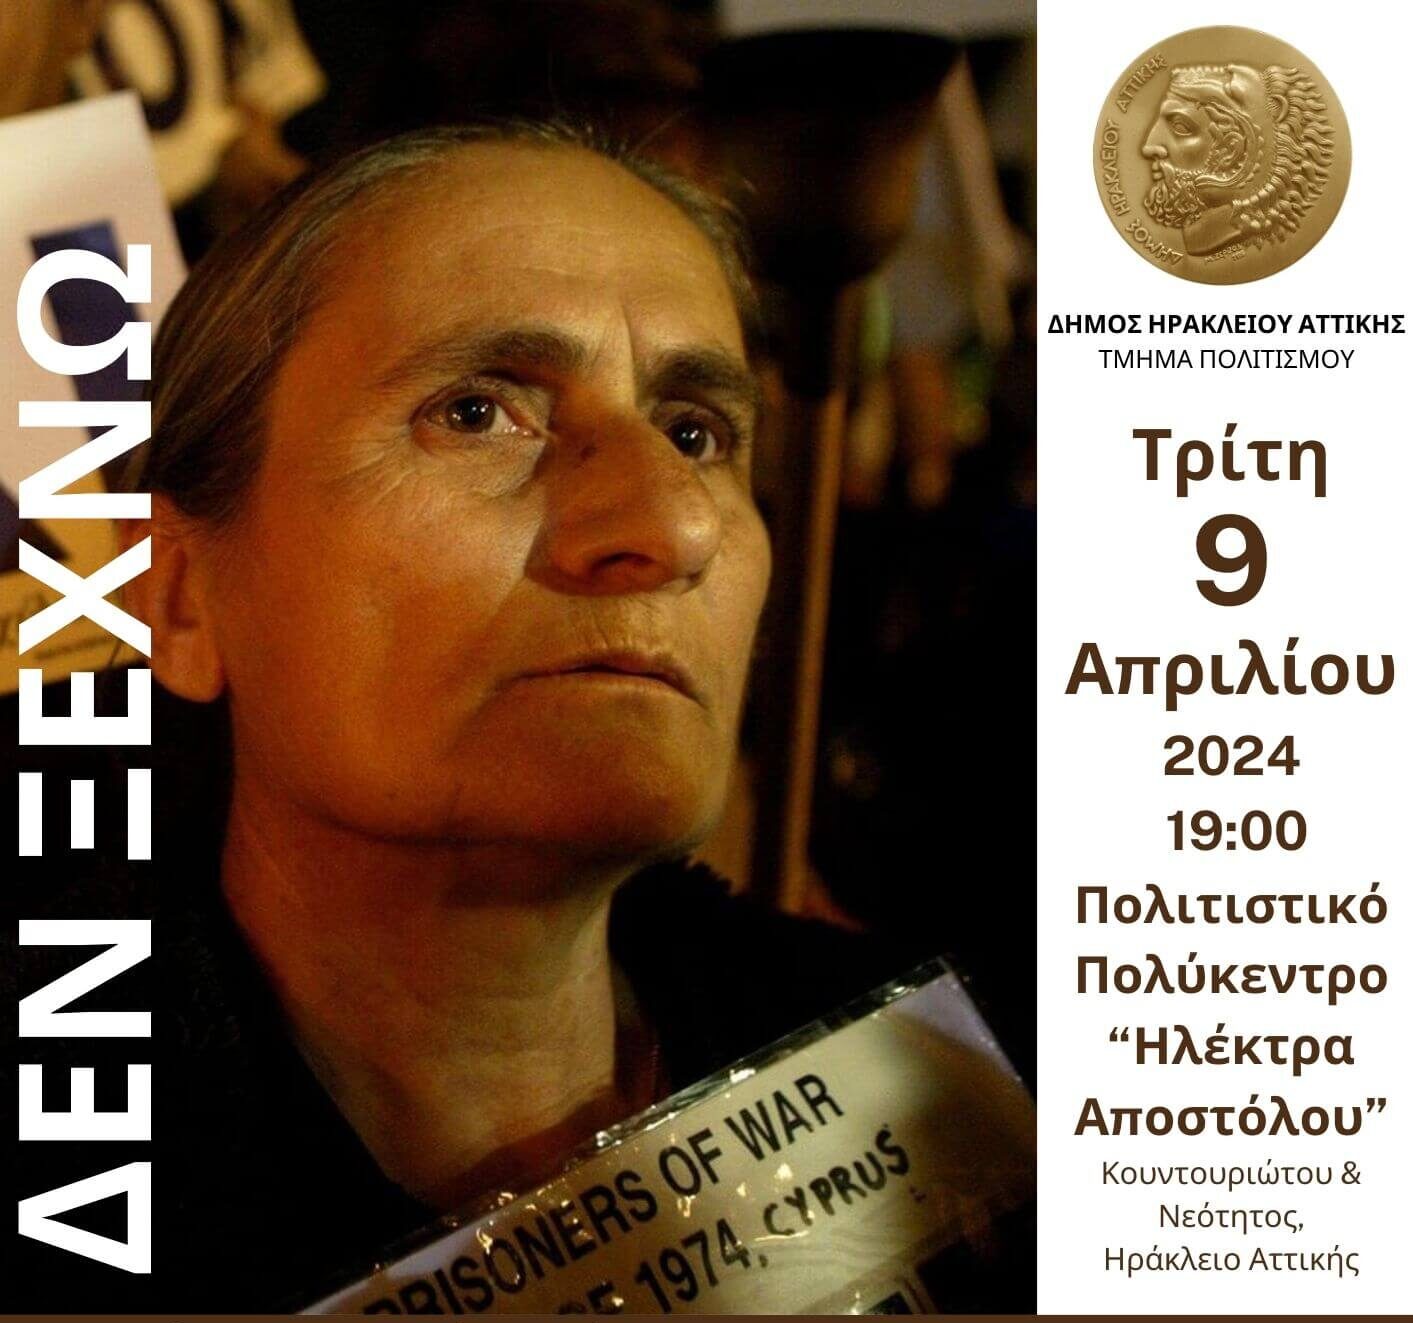 Η Χαρίτα Μάντολες στον Δήμο Ηρακλείου Αττικής: εκδήλωση προς τιμήν της στις 9 Απριλίου